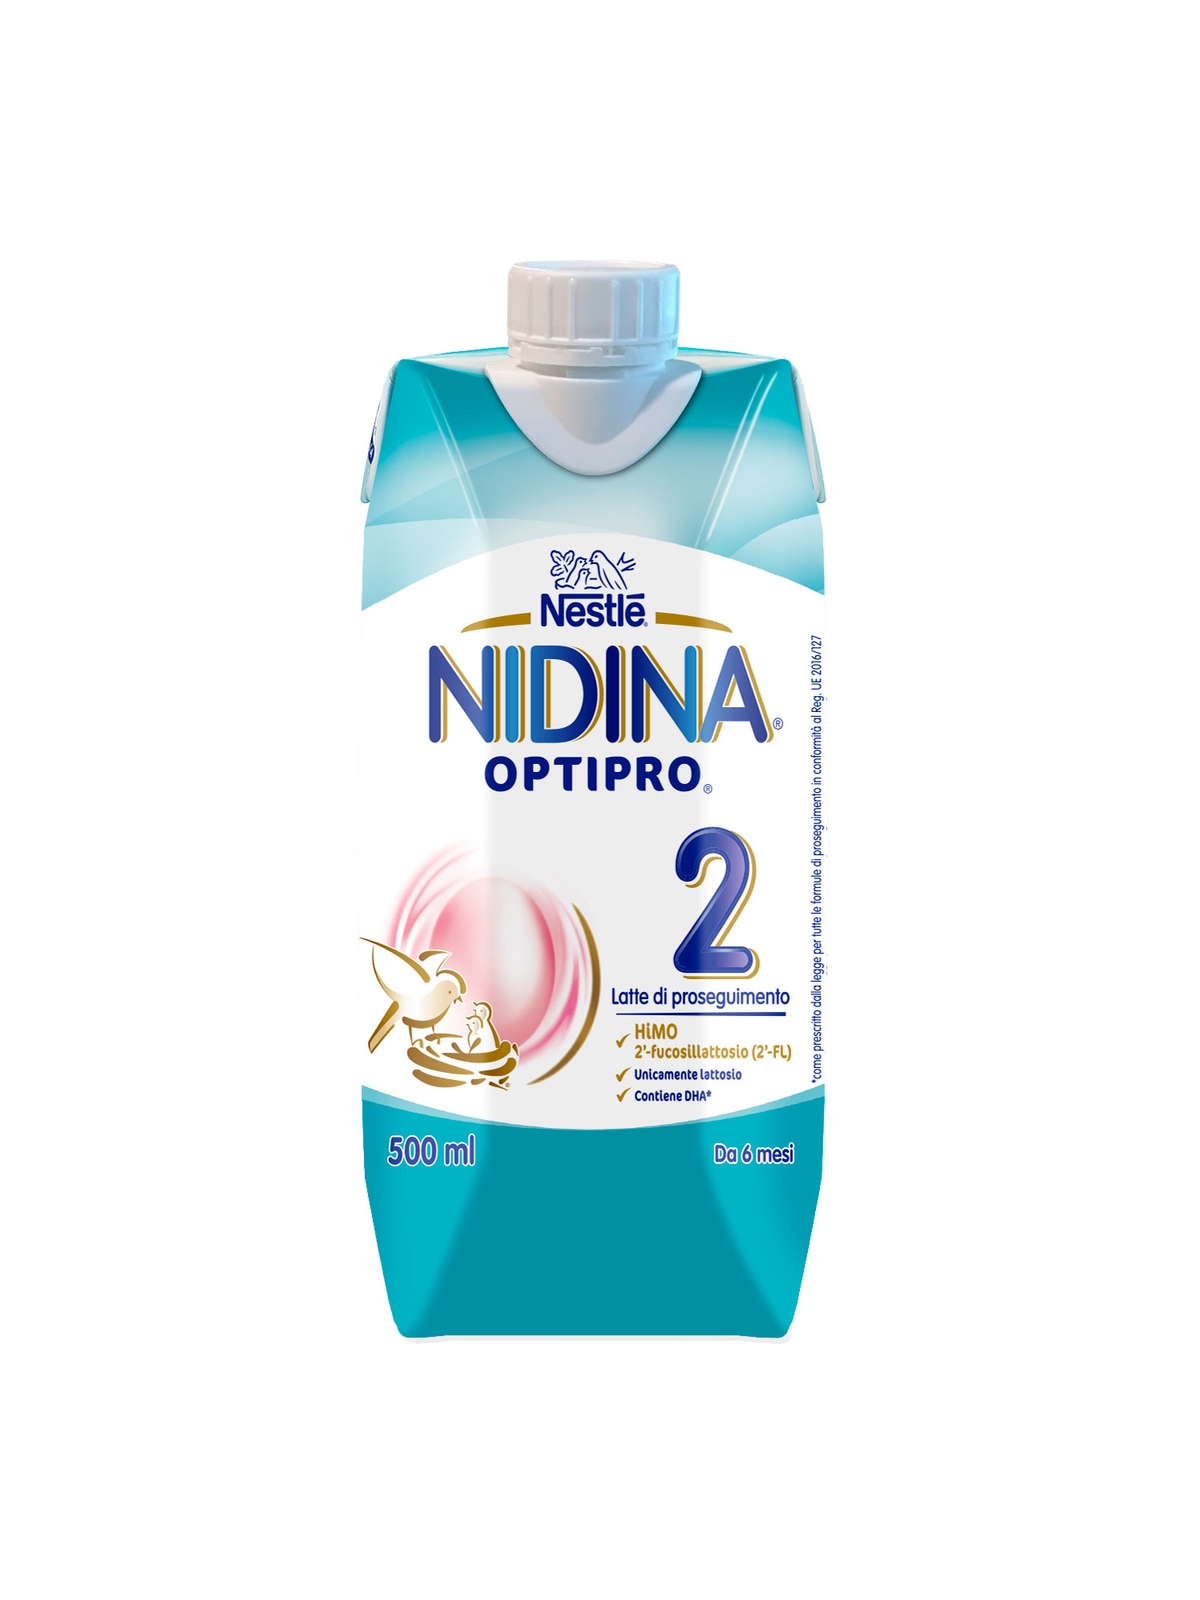 Nestel' nidina optipro 2 da 6 mesi, latte di proseguimento liquido, brick da 500ml - Nestlé Nidina